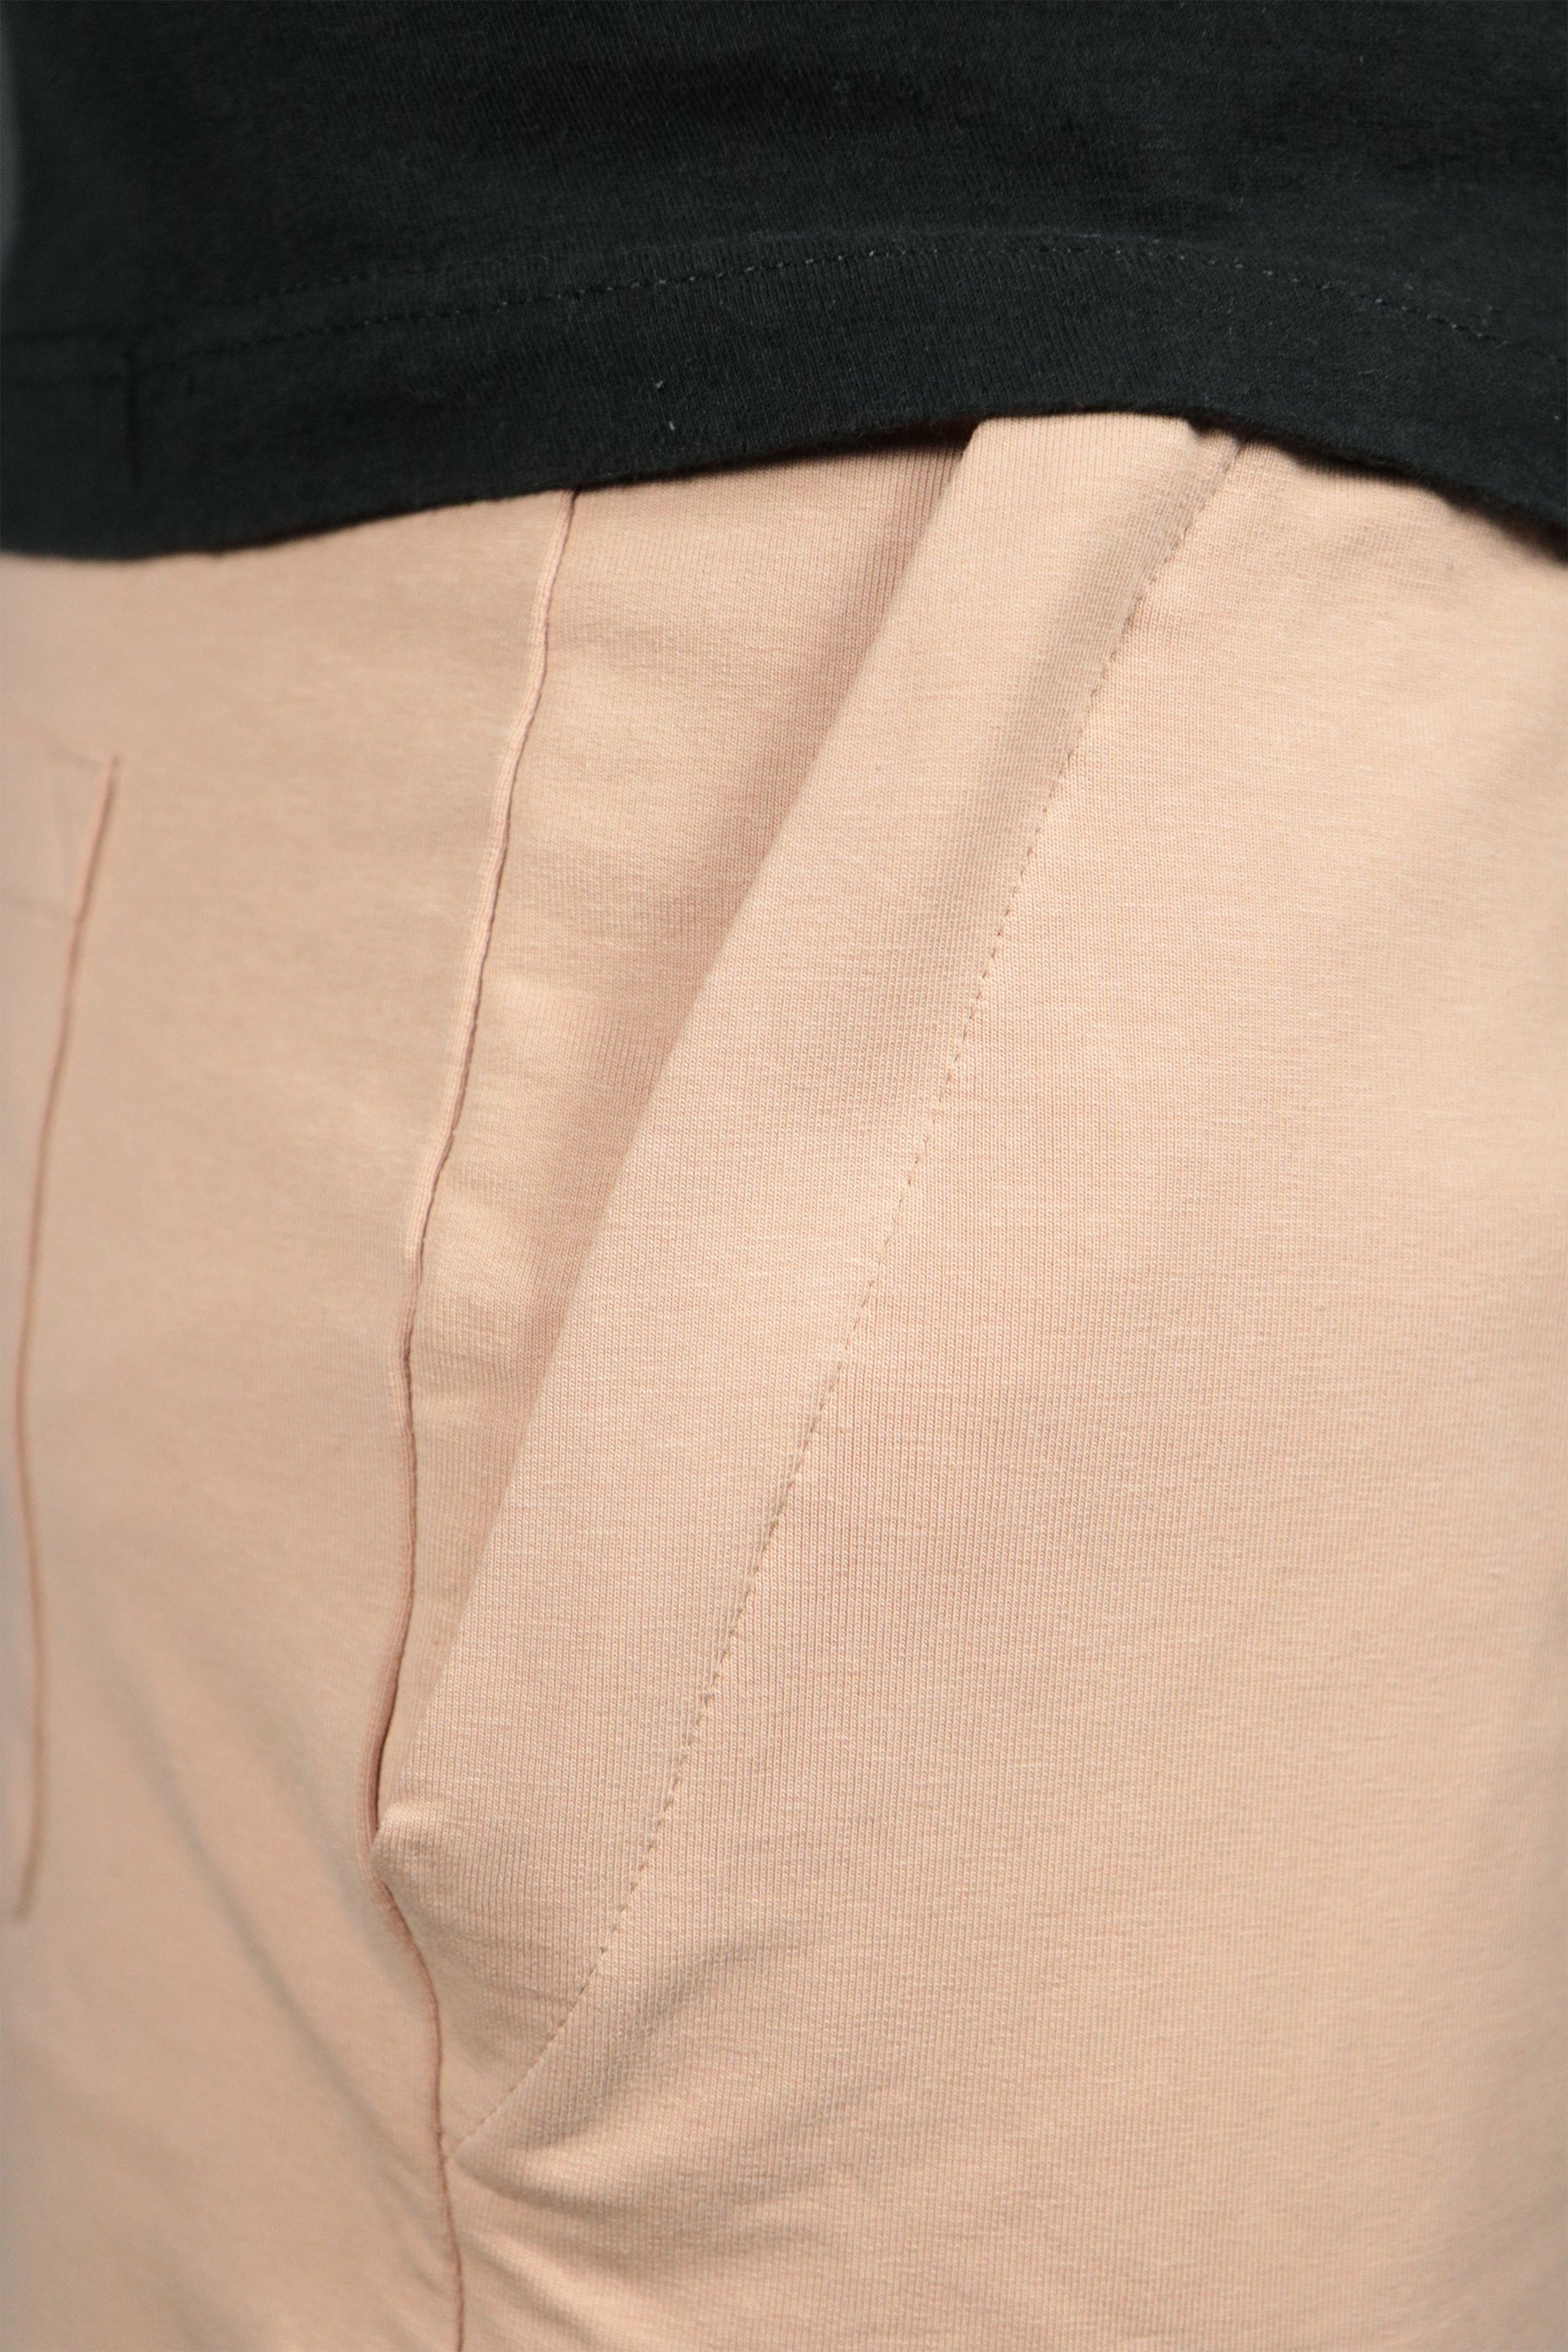 The blush mens terry cloth shorts by Jordan Craig.